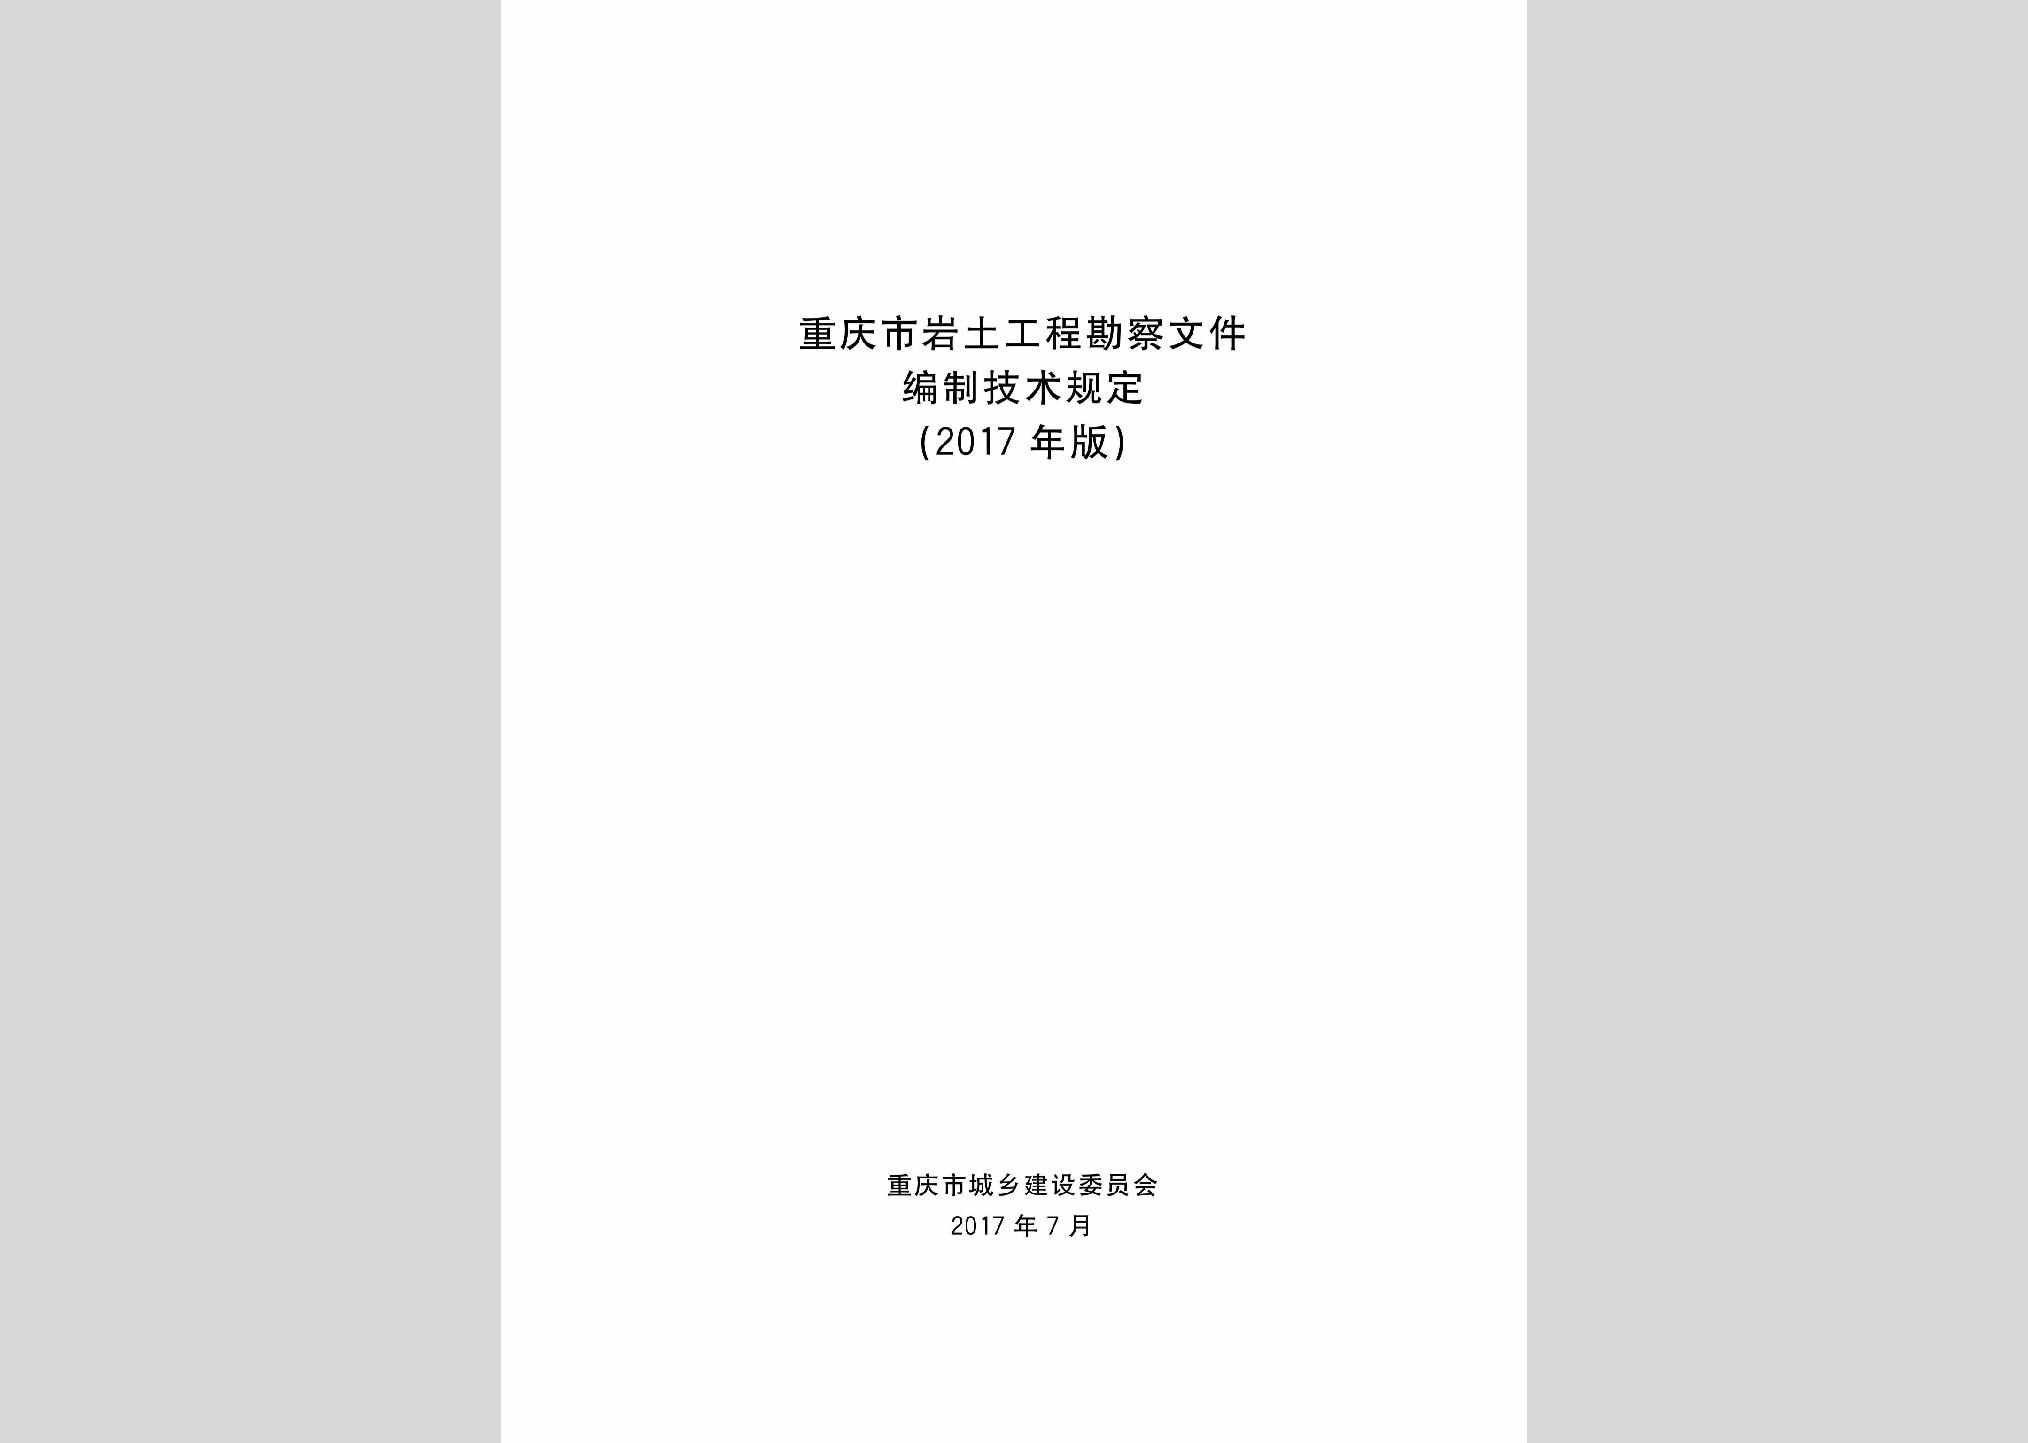 YTKCBZJS：重庆市岩土工程勘察文件编制技术规定(2017年版)